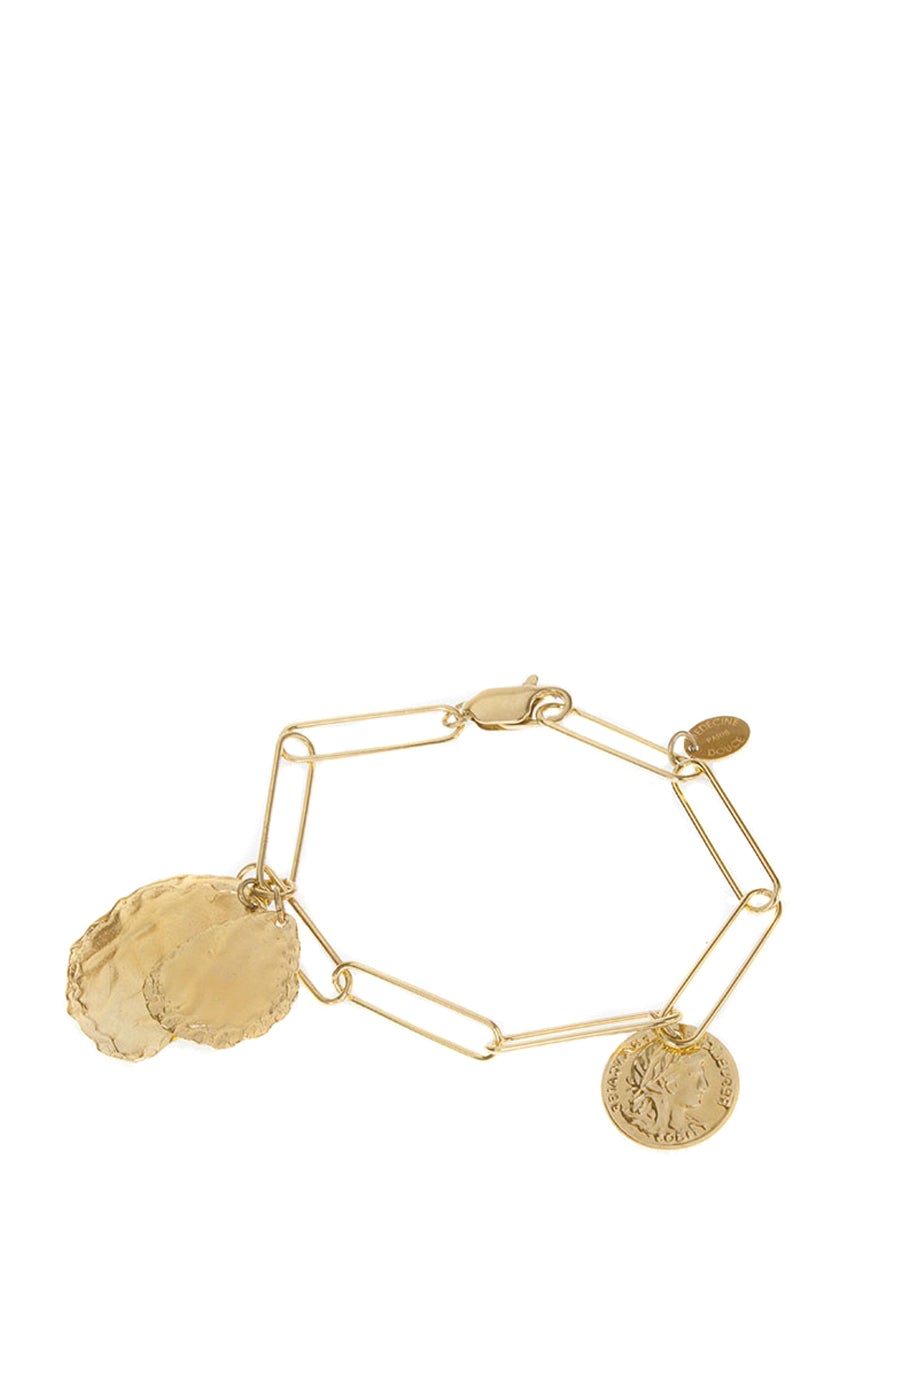 Medecine Douce Tancred Bracele - Gold